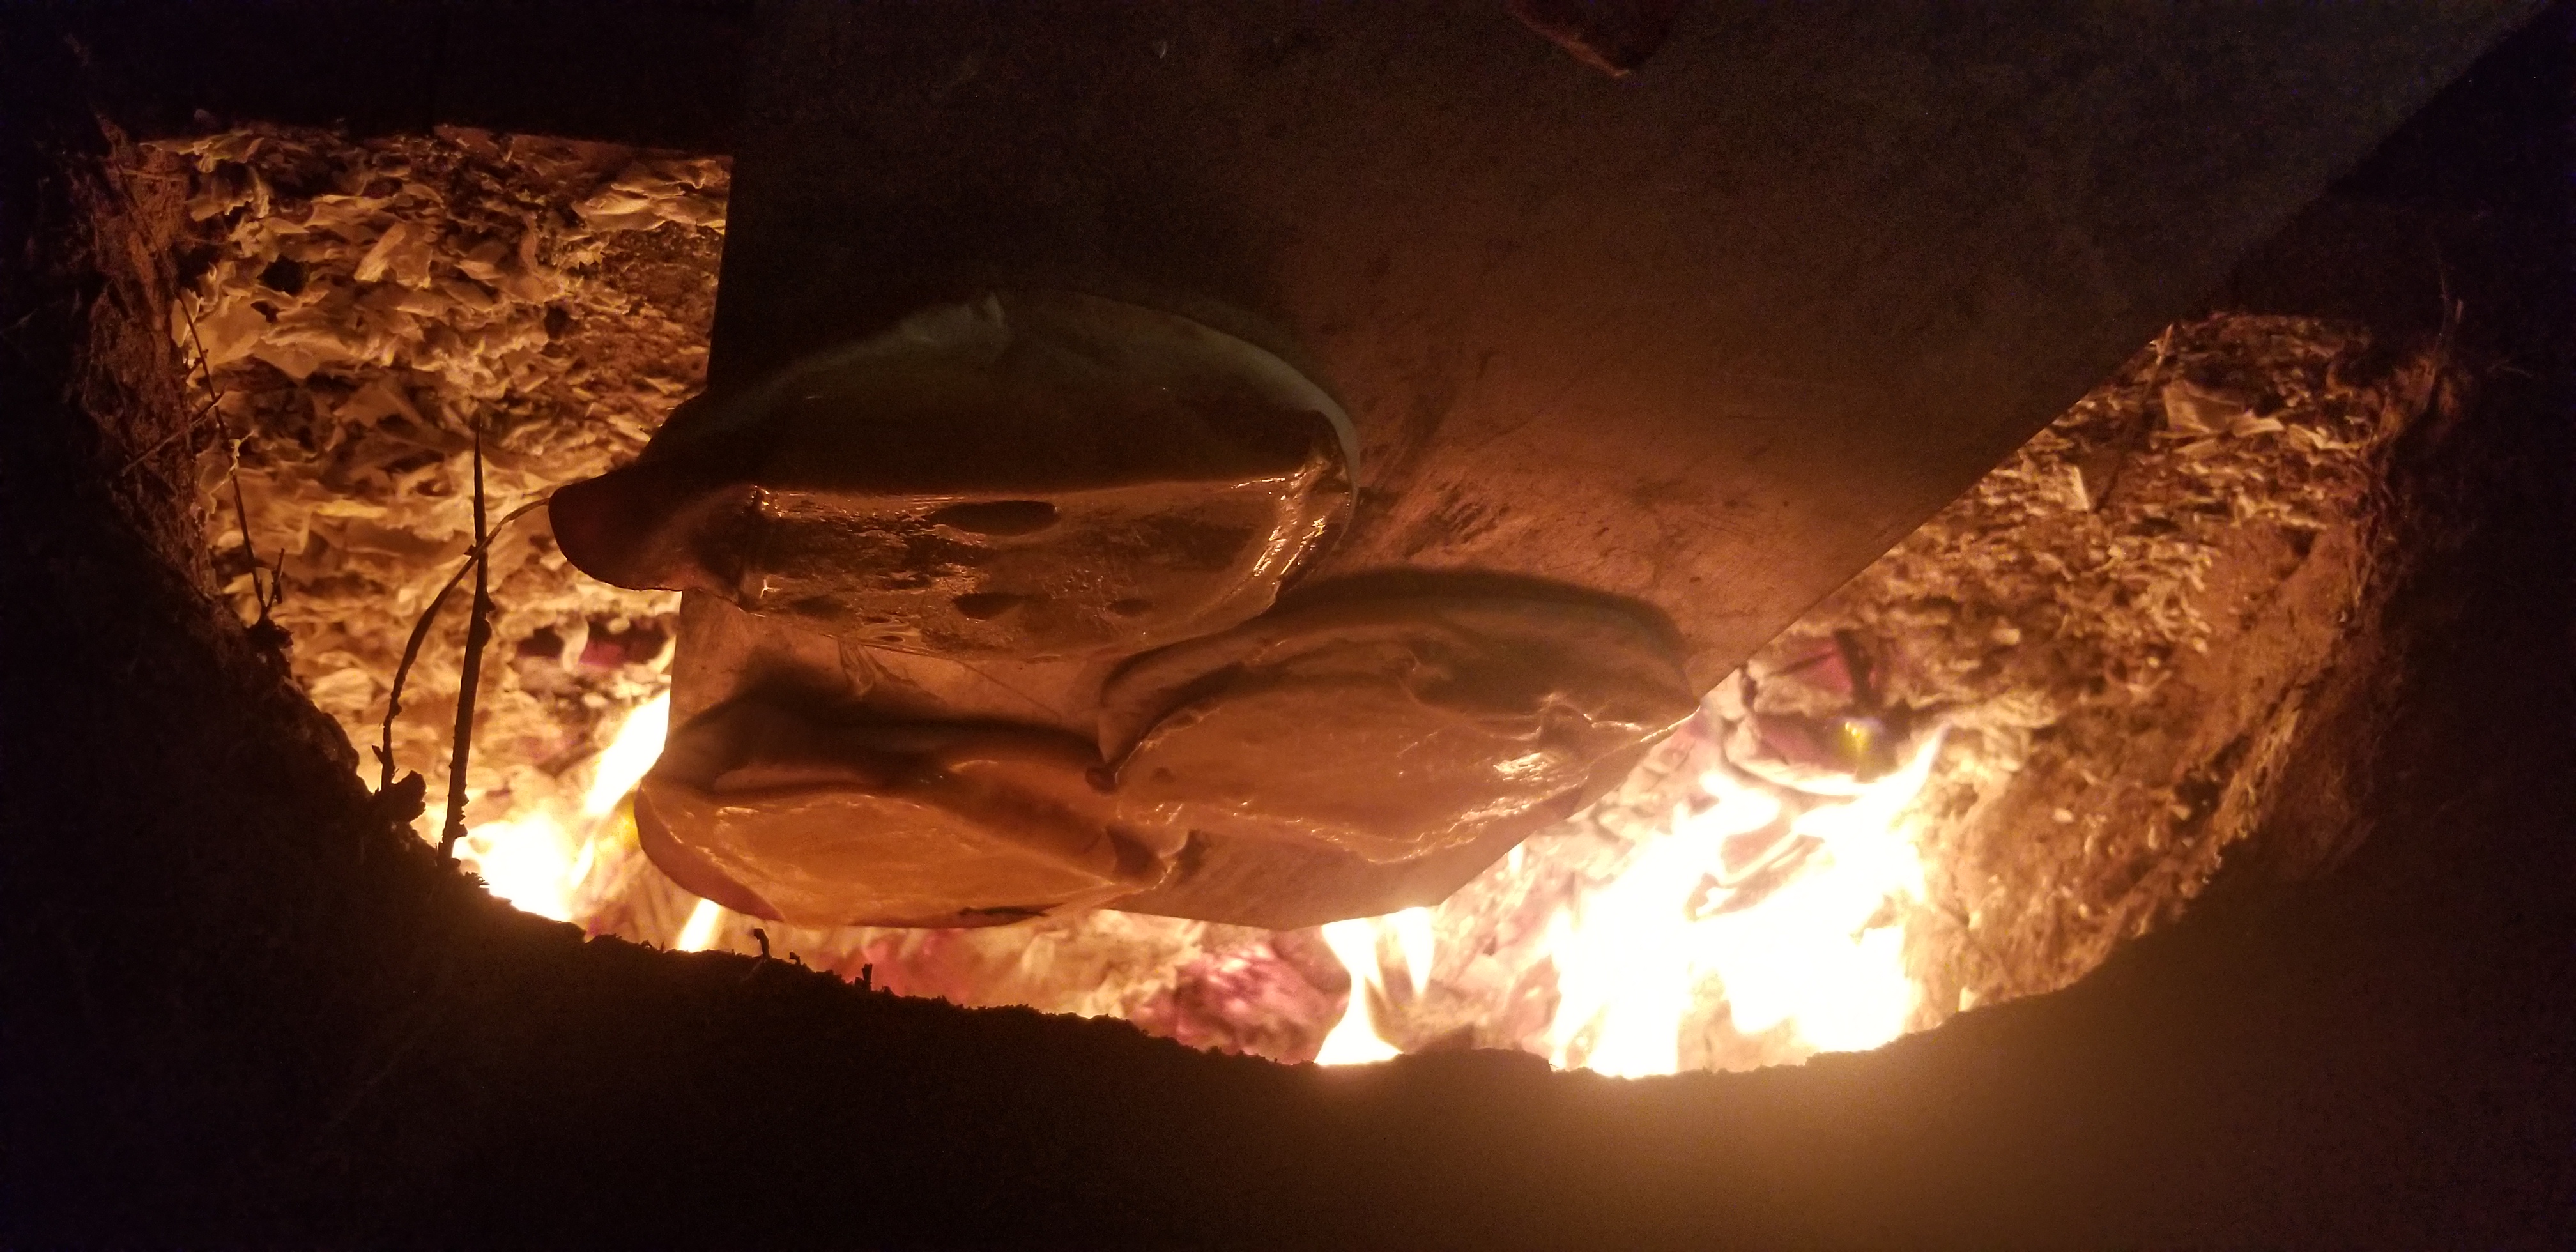 Firing an earthen cob oven